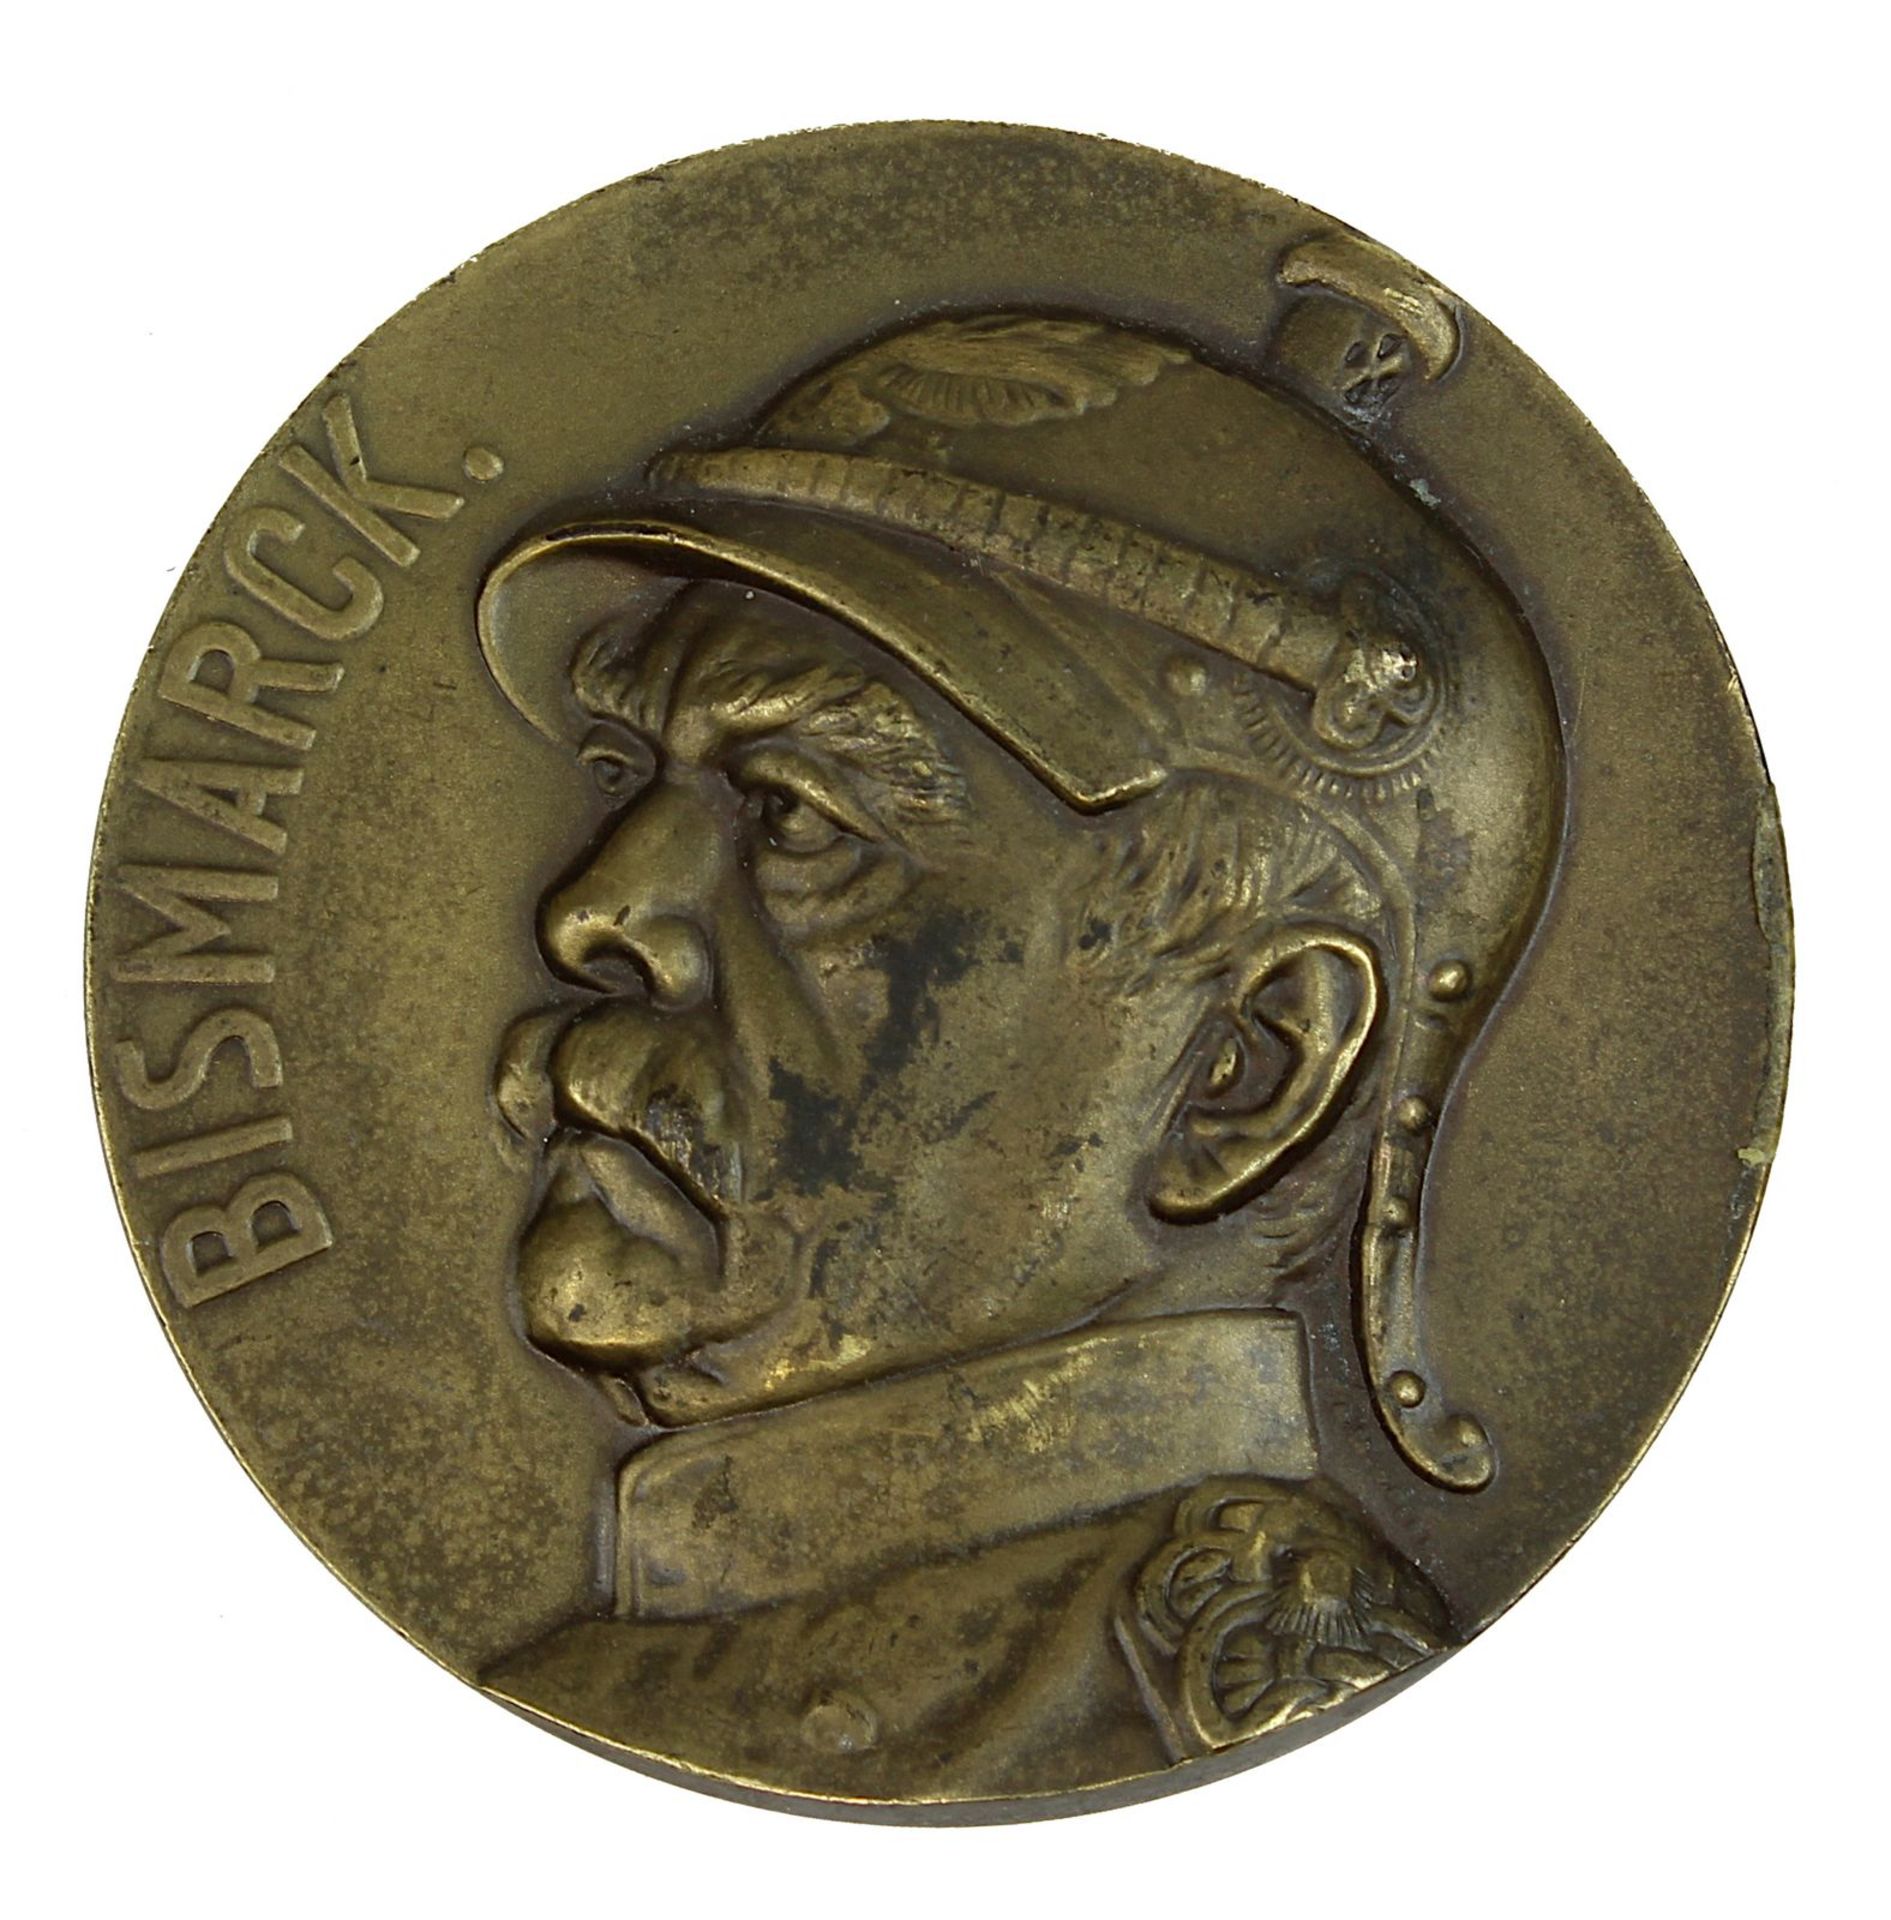 Bismarck-Medaille, Deutsches Reich 1905, zum 90. Geburtstag von Otto von Bismarck 1905, D: 6 cm, - Image 2 of 3